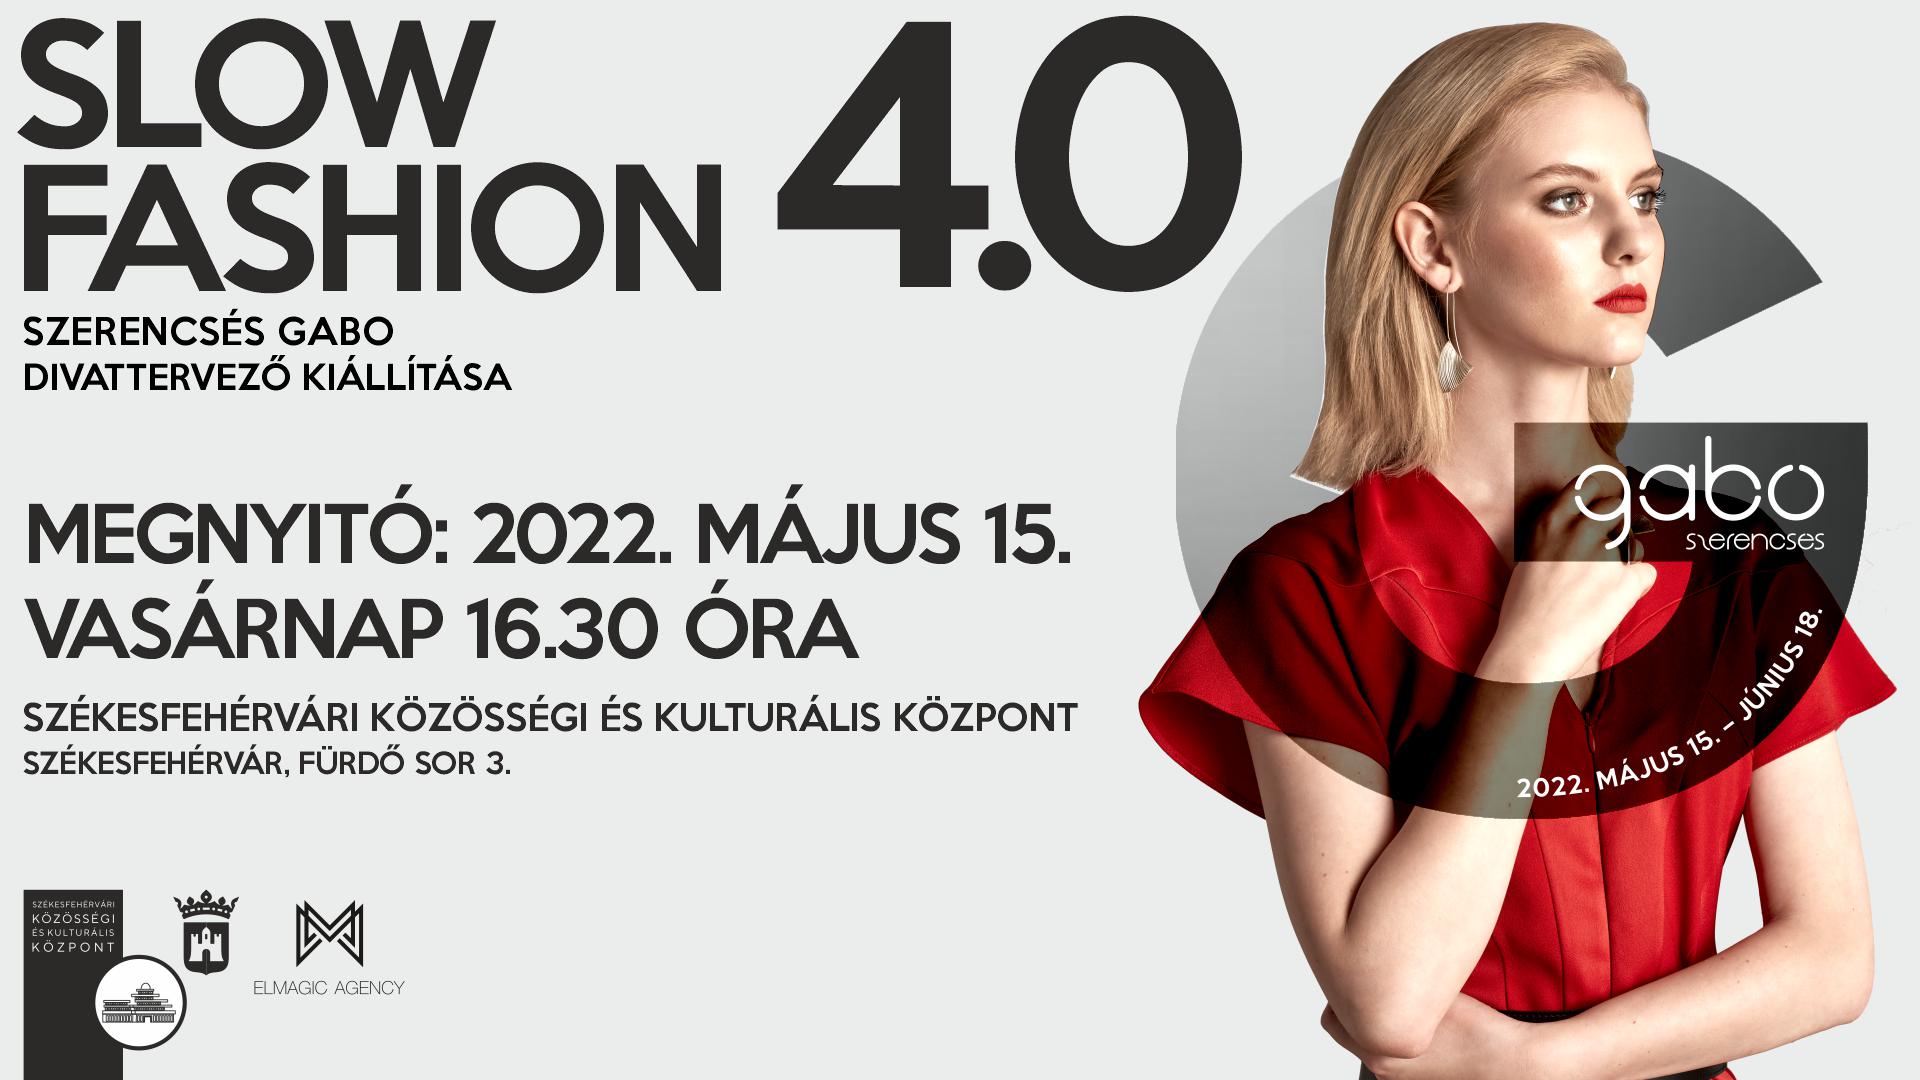 Slow fashion 4.0 @ Székesfehérvári Közösségi és Kulturális Központ